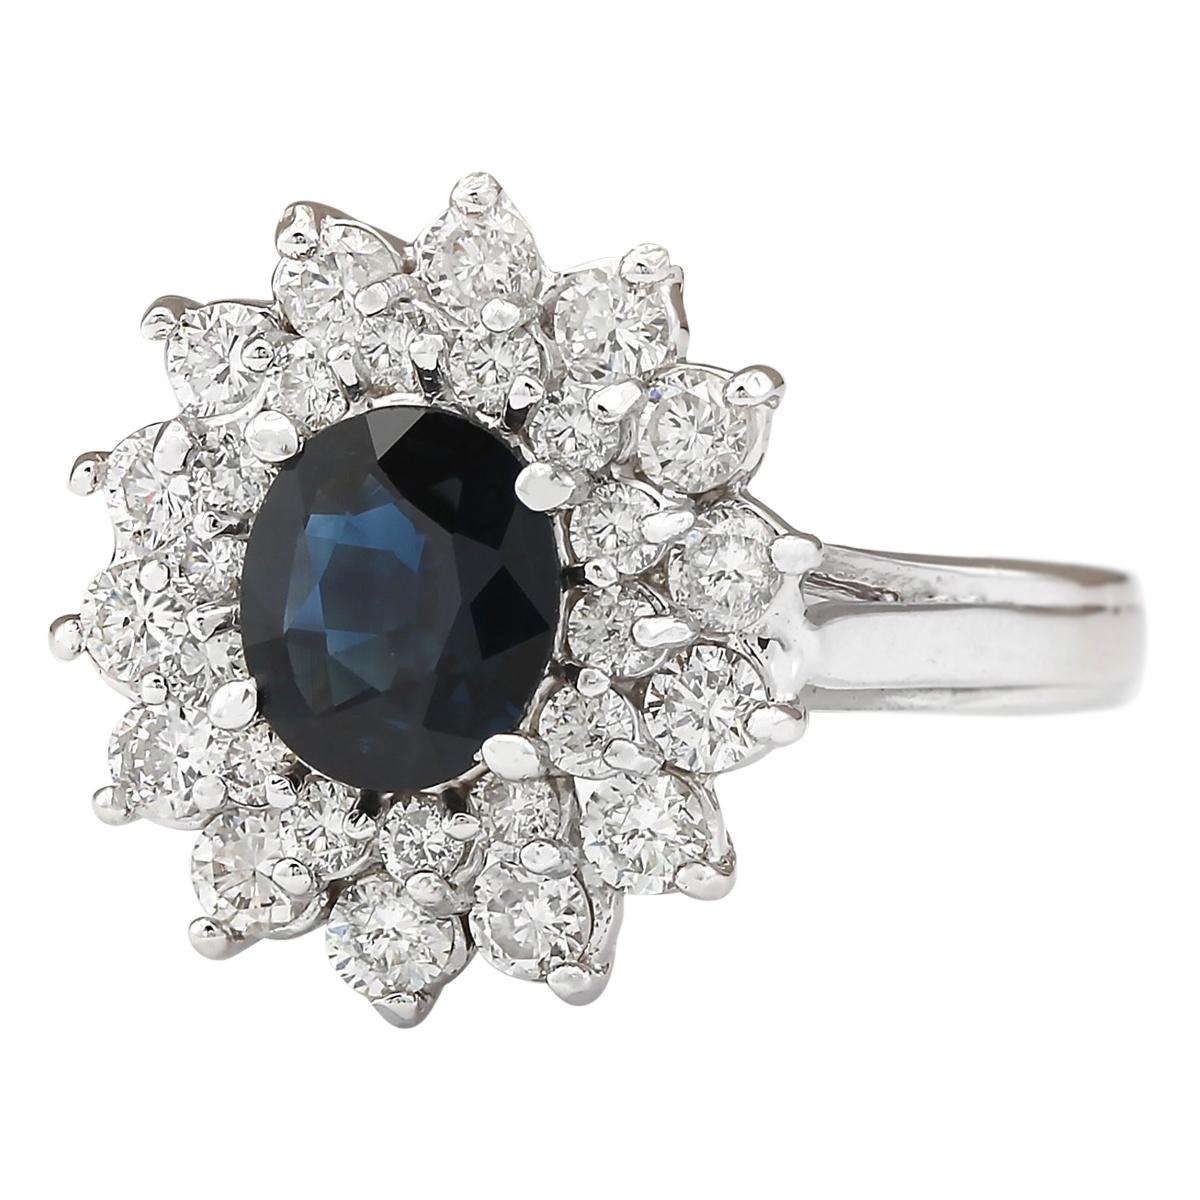 2.30 Carat Natural Sapphire 14 Karat White Gold Diamond Ring
Stamped: 14K White Gold
Total Ring Weight: 5.2 Grams
Total Natural Sapphire Weight is 1.20 Carat (Measures: 8.00x6.00 mm)
Color: Blue
Total Natural Diamond Weight is 1.10 Carat
Color: F-G,